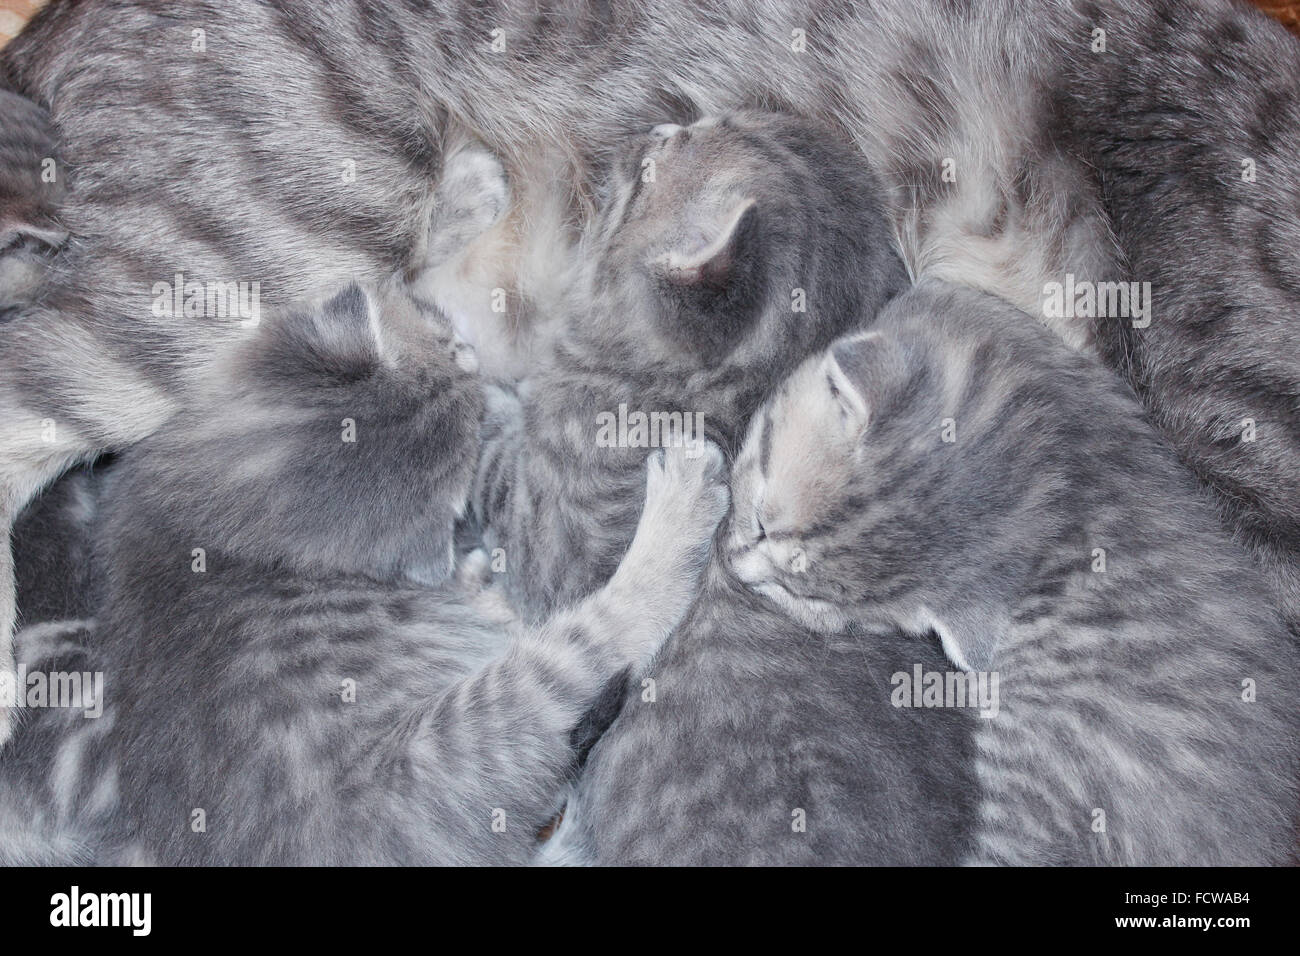 cat and its newborn kittens of Scottish Straight breed Stock Photo